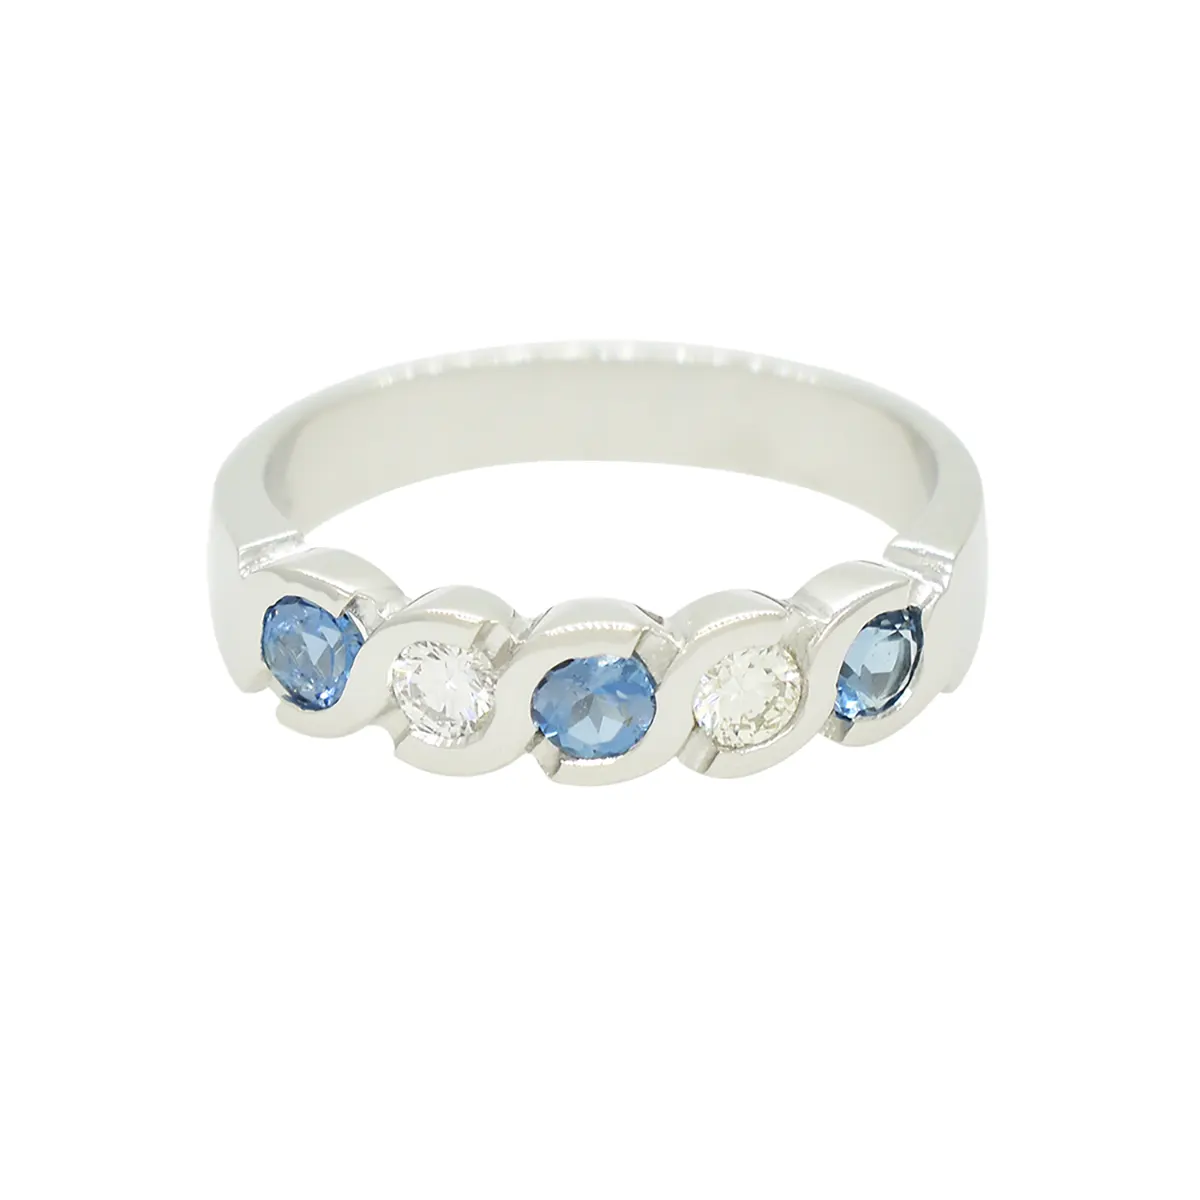 aquamarine-and-diamond-wedding-ring-band-in-18k-white-gold-bezel-setting-